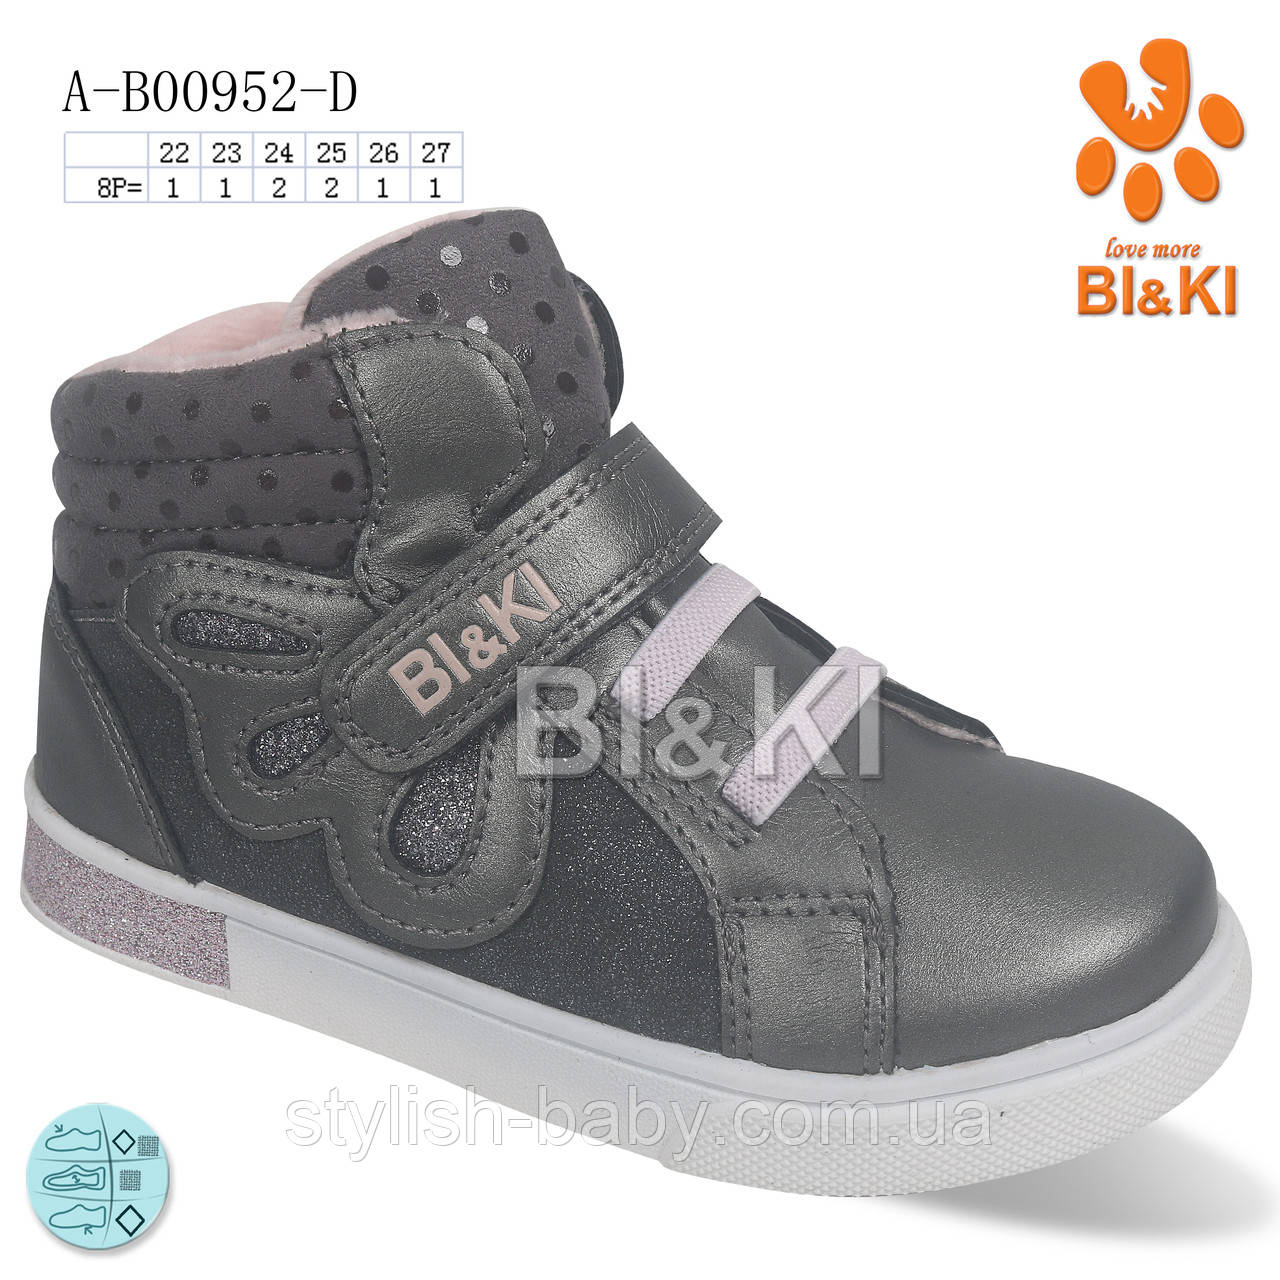 Детская обувь оптом. Детская демисезонная обувь 2022 бренда Tom.m - Bi&Ki для девочек (рр. с 22 по 27)